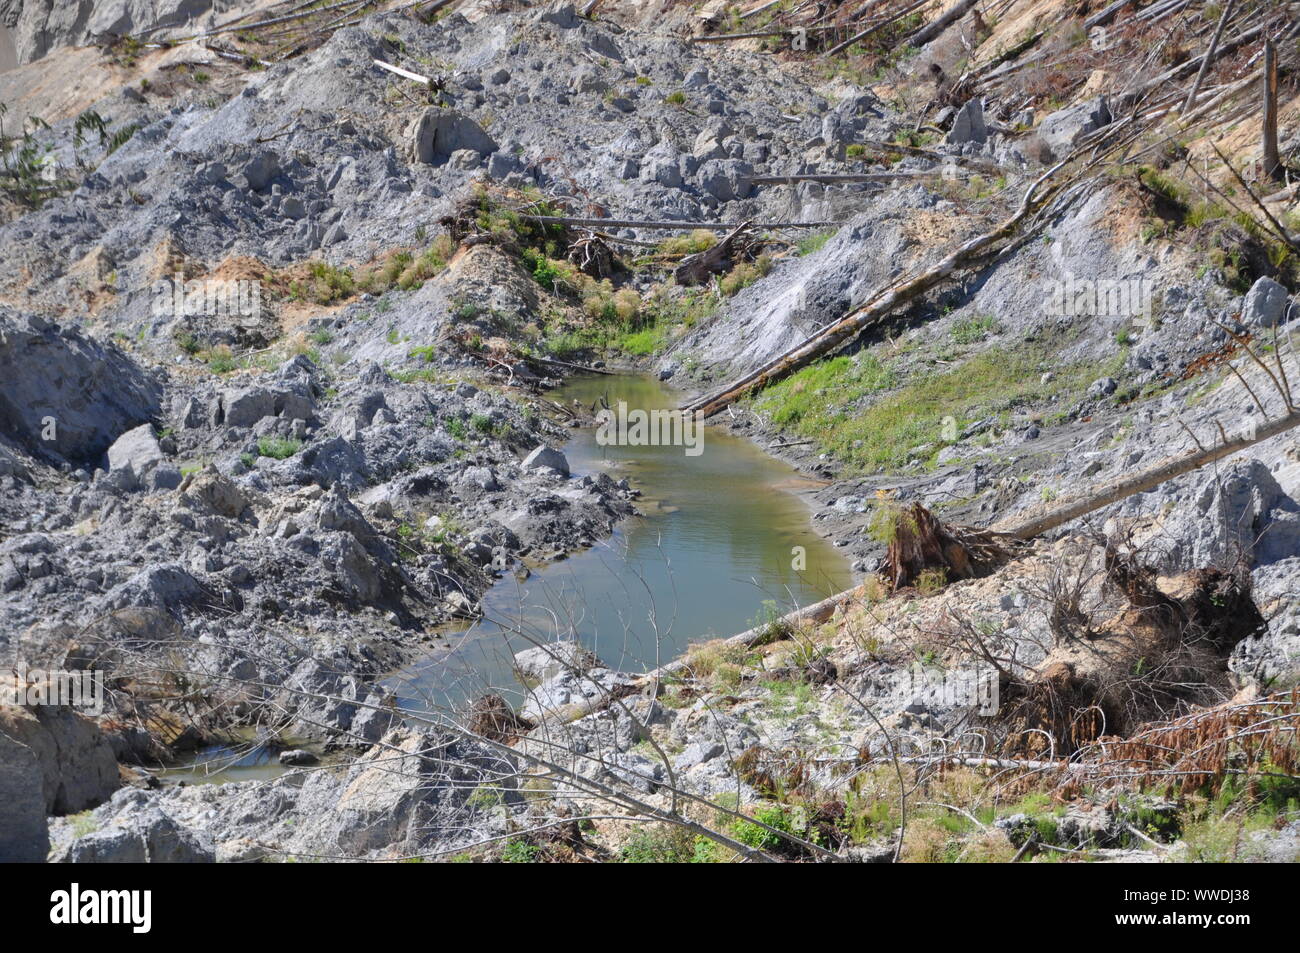 Sag ponds, 2014 Oso Landslide, Oso Landslide, North Fork Stillaguamish River Valley, Snohomish County, Washington, USA Stock Photo